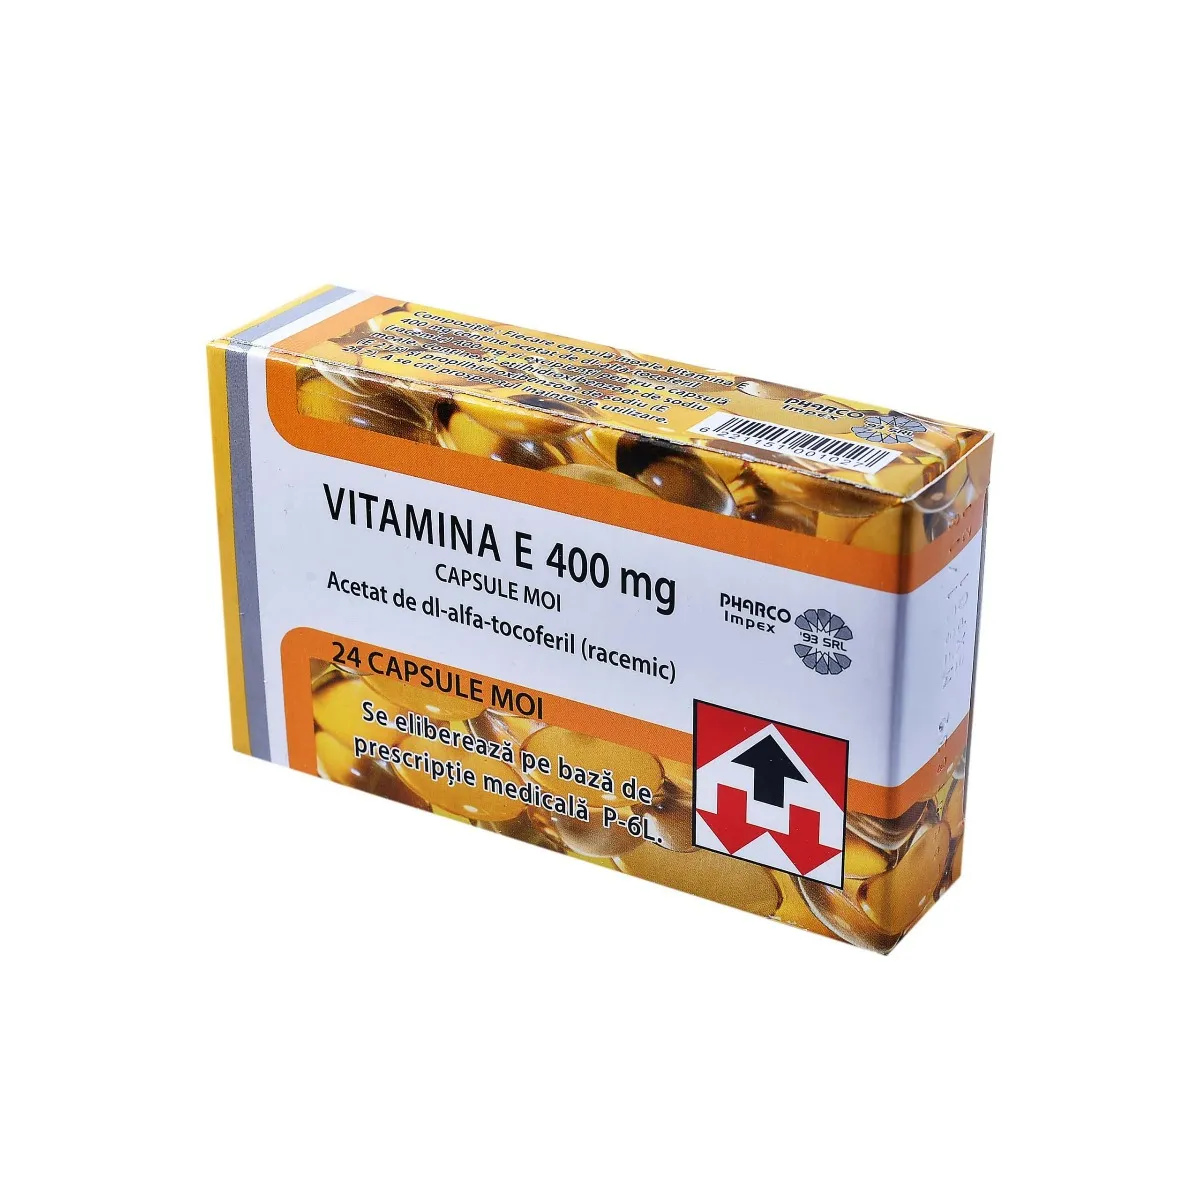 Vitamina E 400mg, 24 capsule moi, Pharco